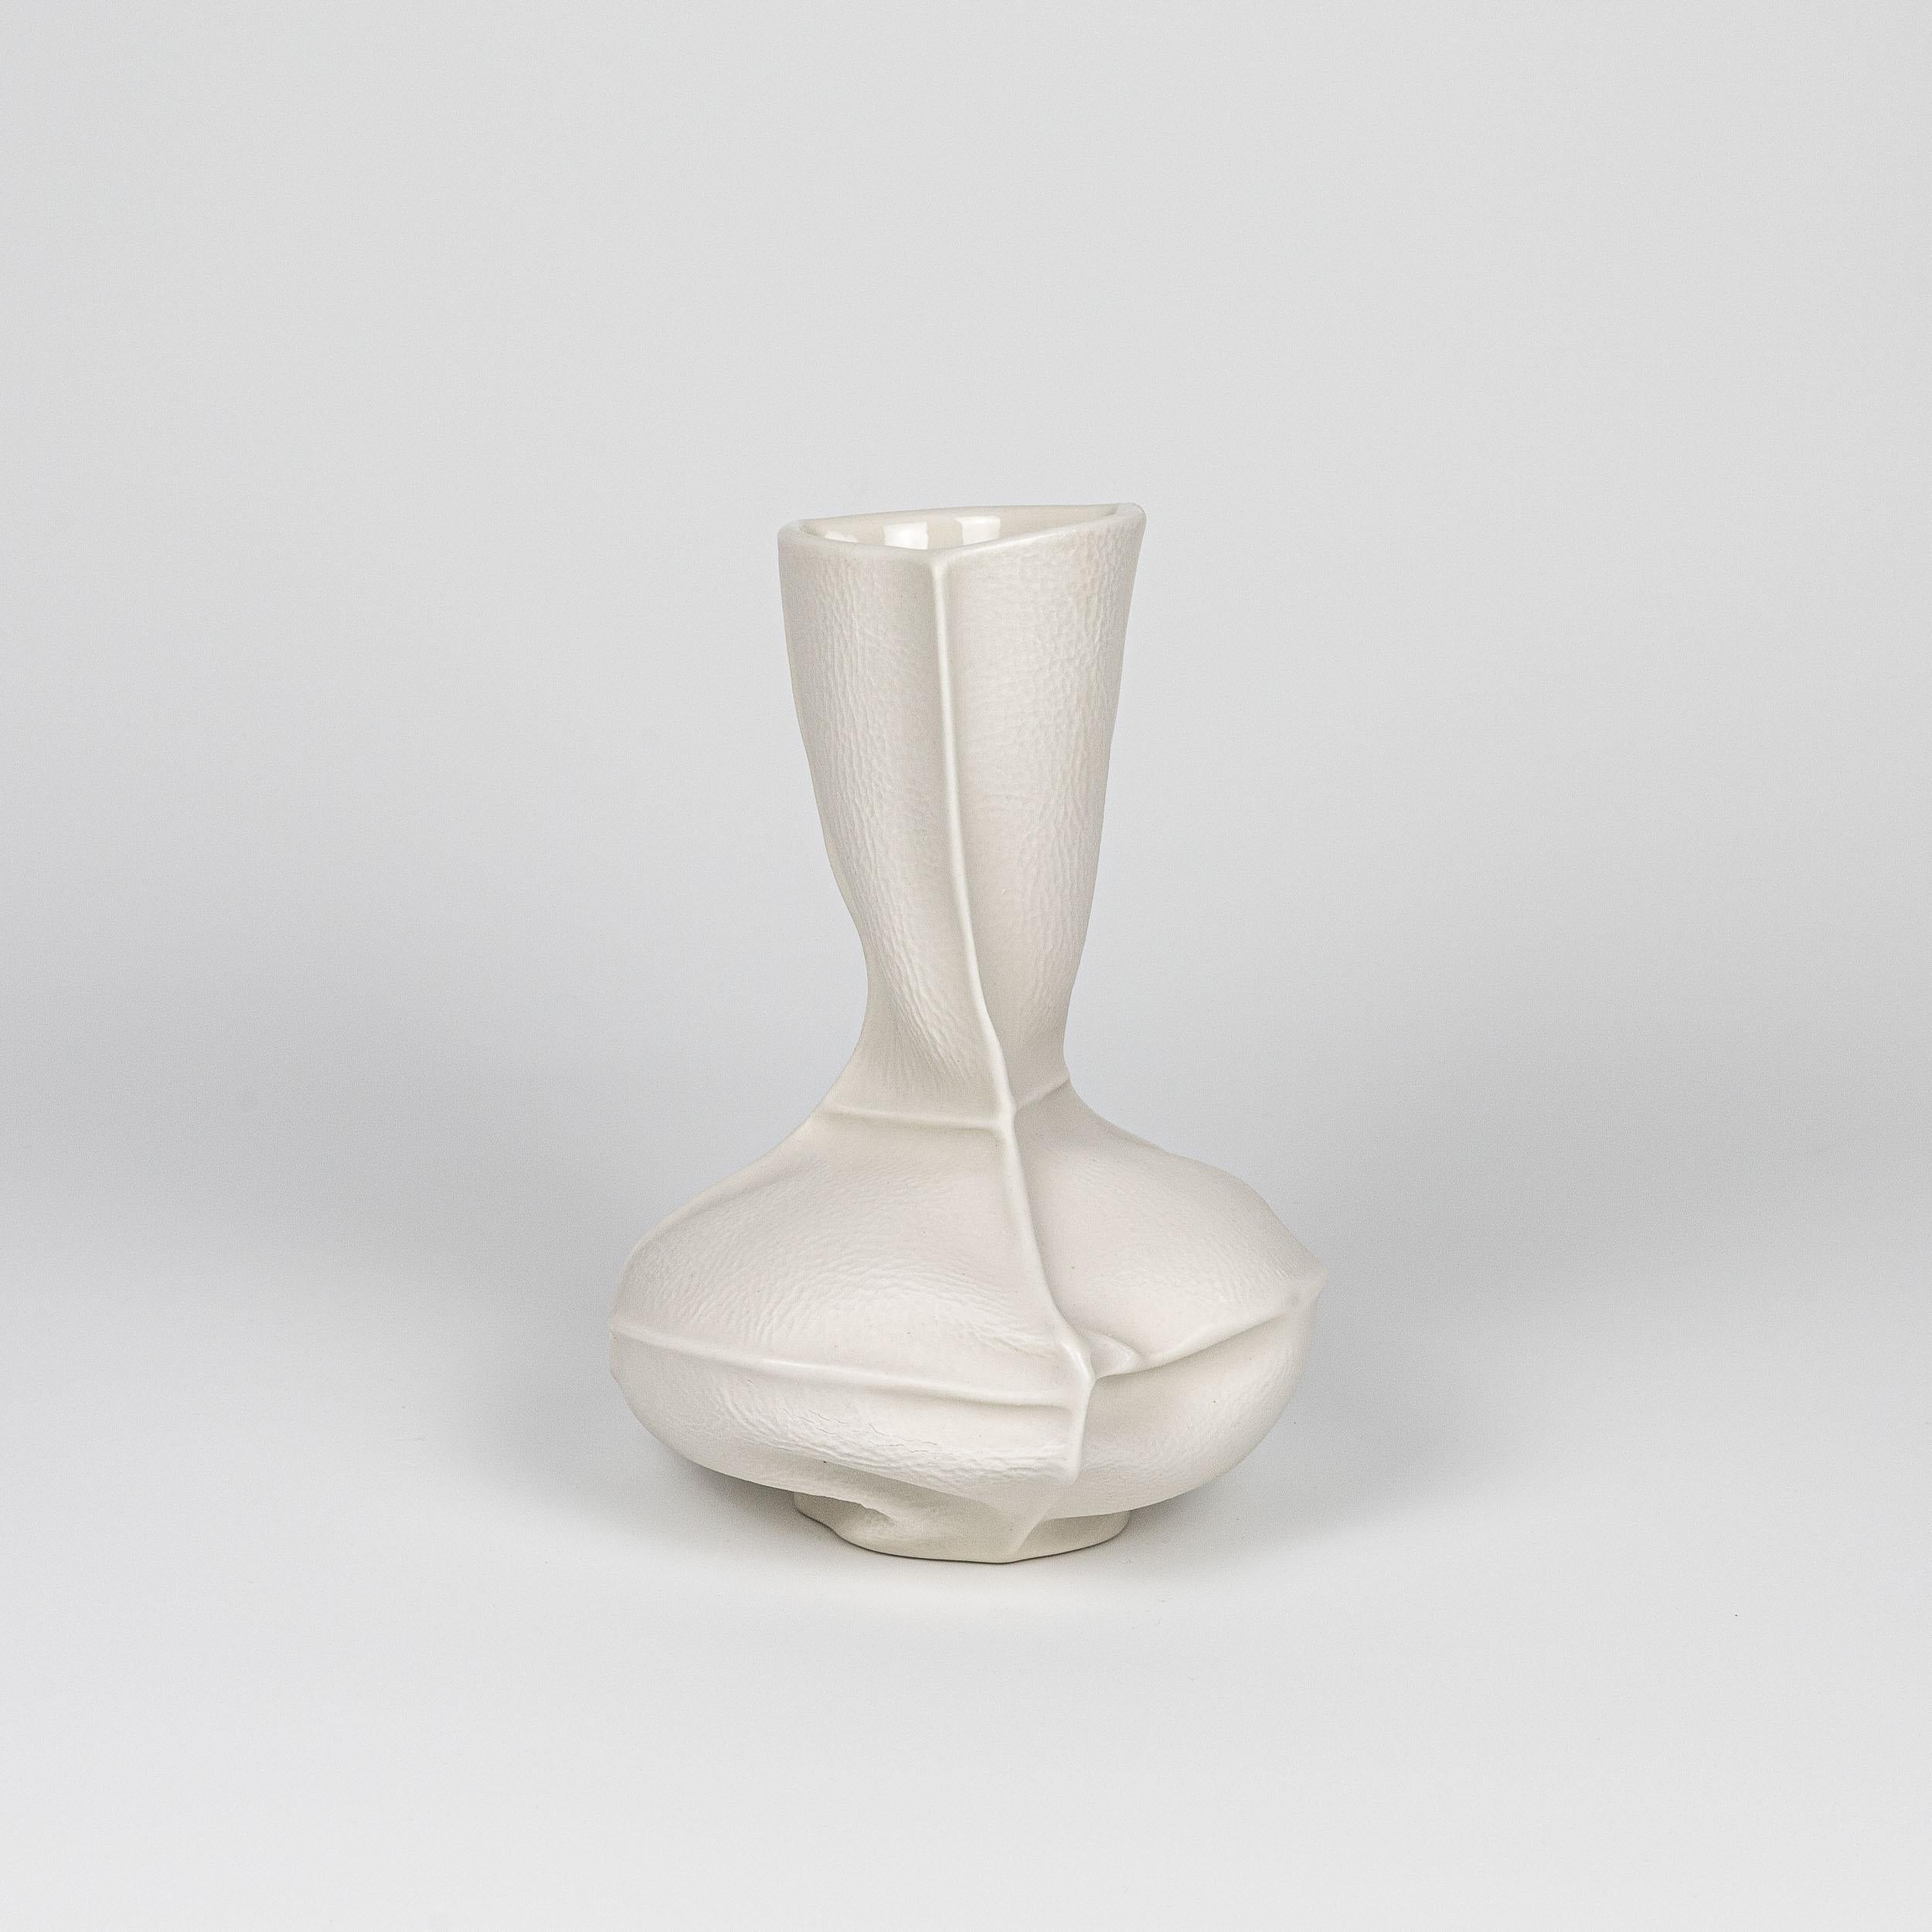 Eine Blumenvase aus Porzellan mit einer organischen Form und Textur, die durch Gießen von flüssigem Porzellan in genähte Lederformen hergestellt wird. Klare Glasur auf der Innenfläche. Aufgrund des Herstellungsprozesses ist jede Vase ein Unikat.